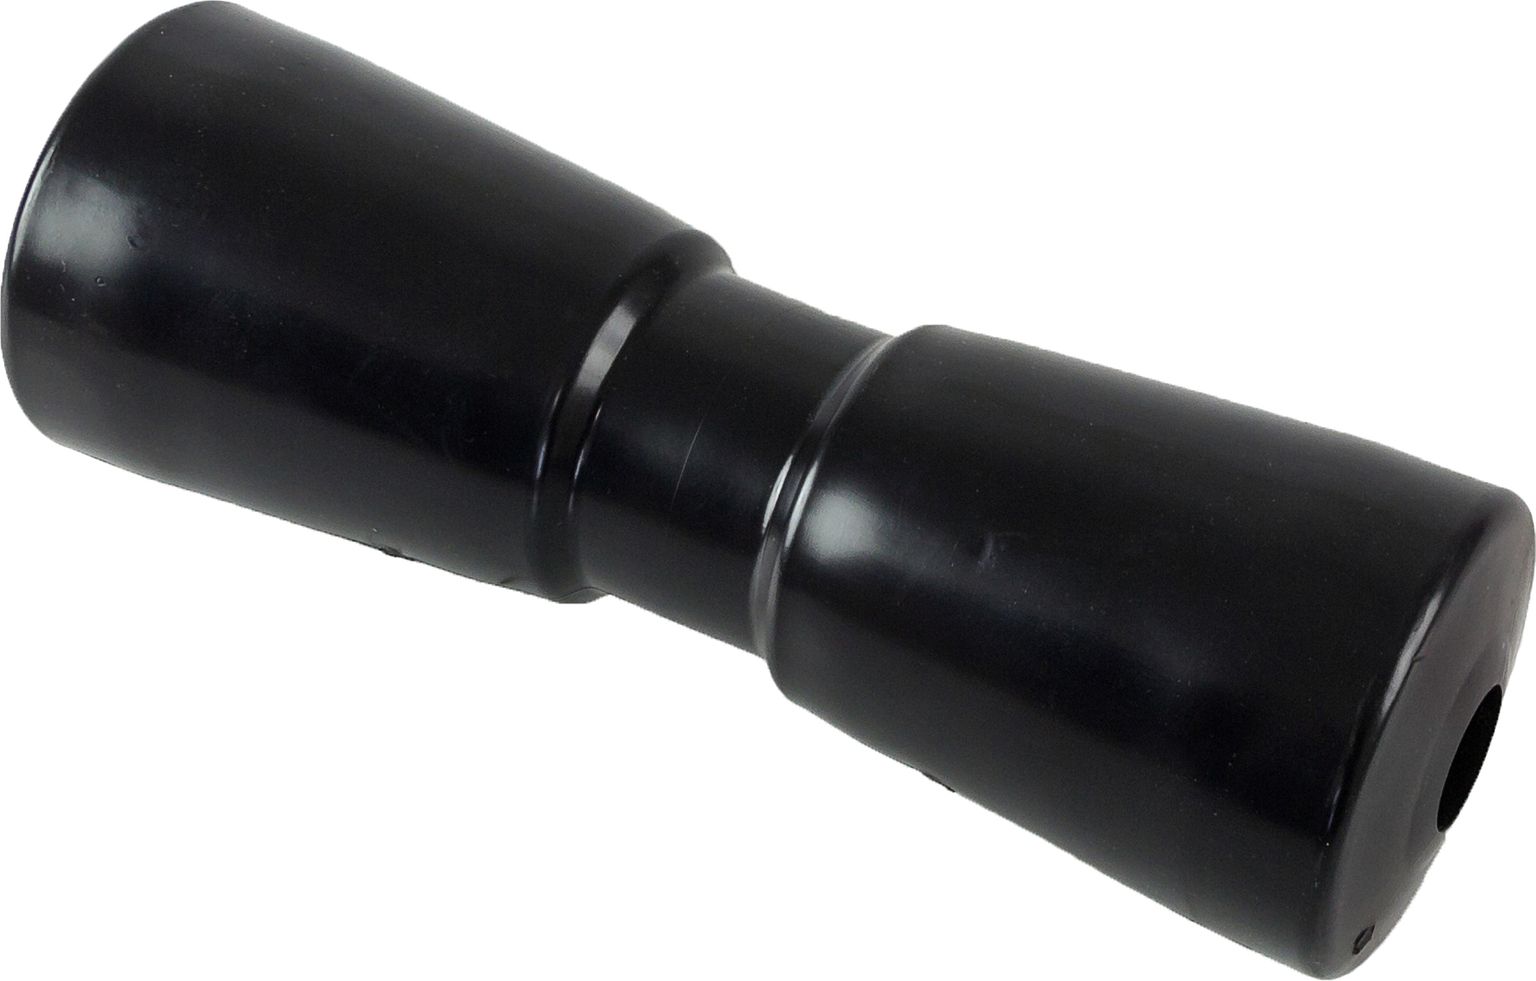 Ролик подкильный 250 мм, черный C11323B ролик для пресса 28 х 16 х 16 см цвет чёрный